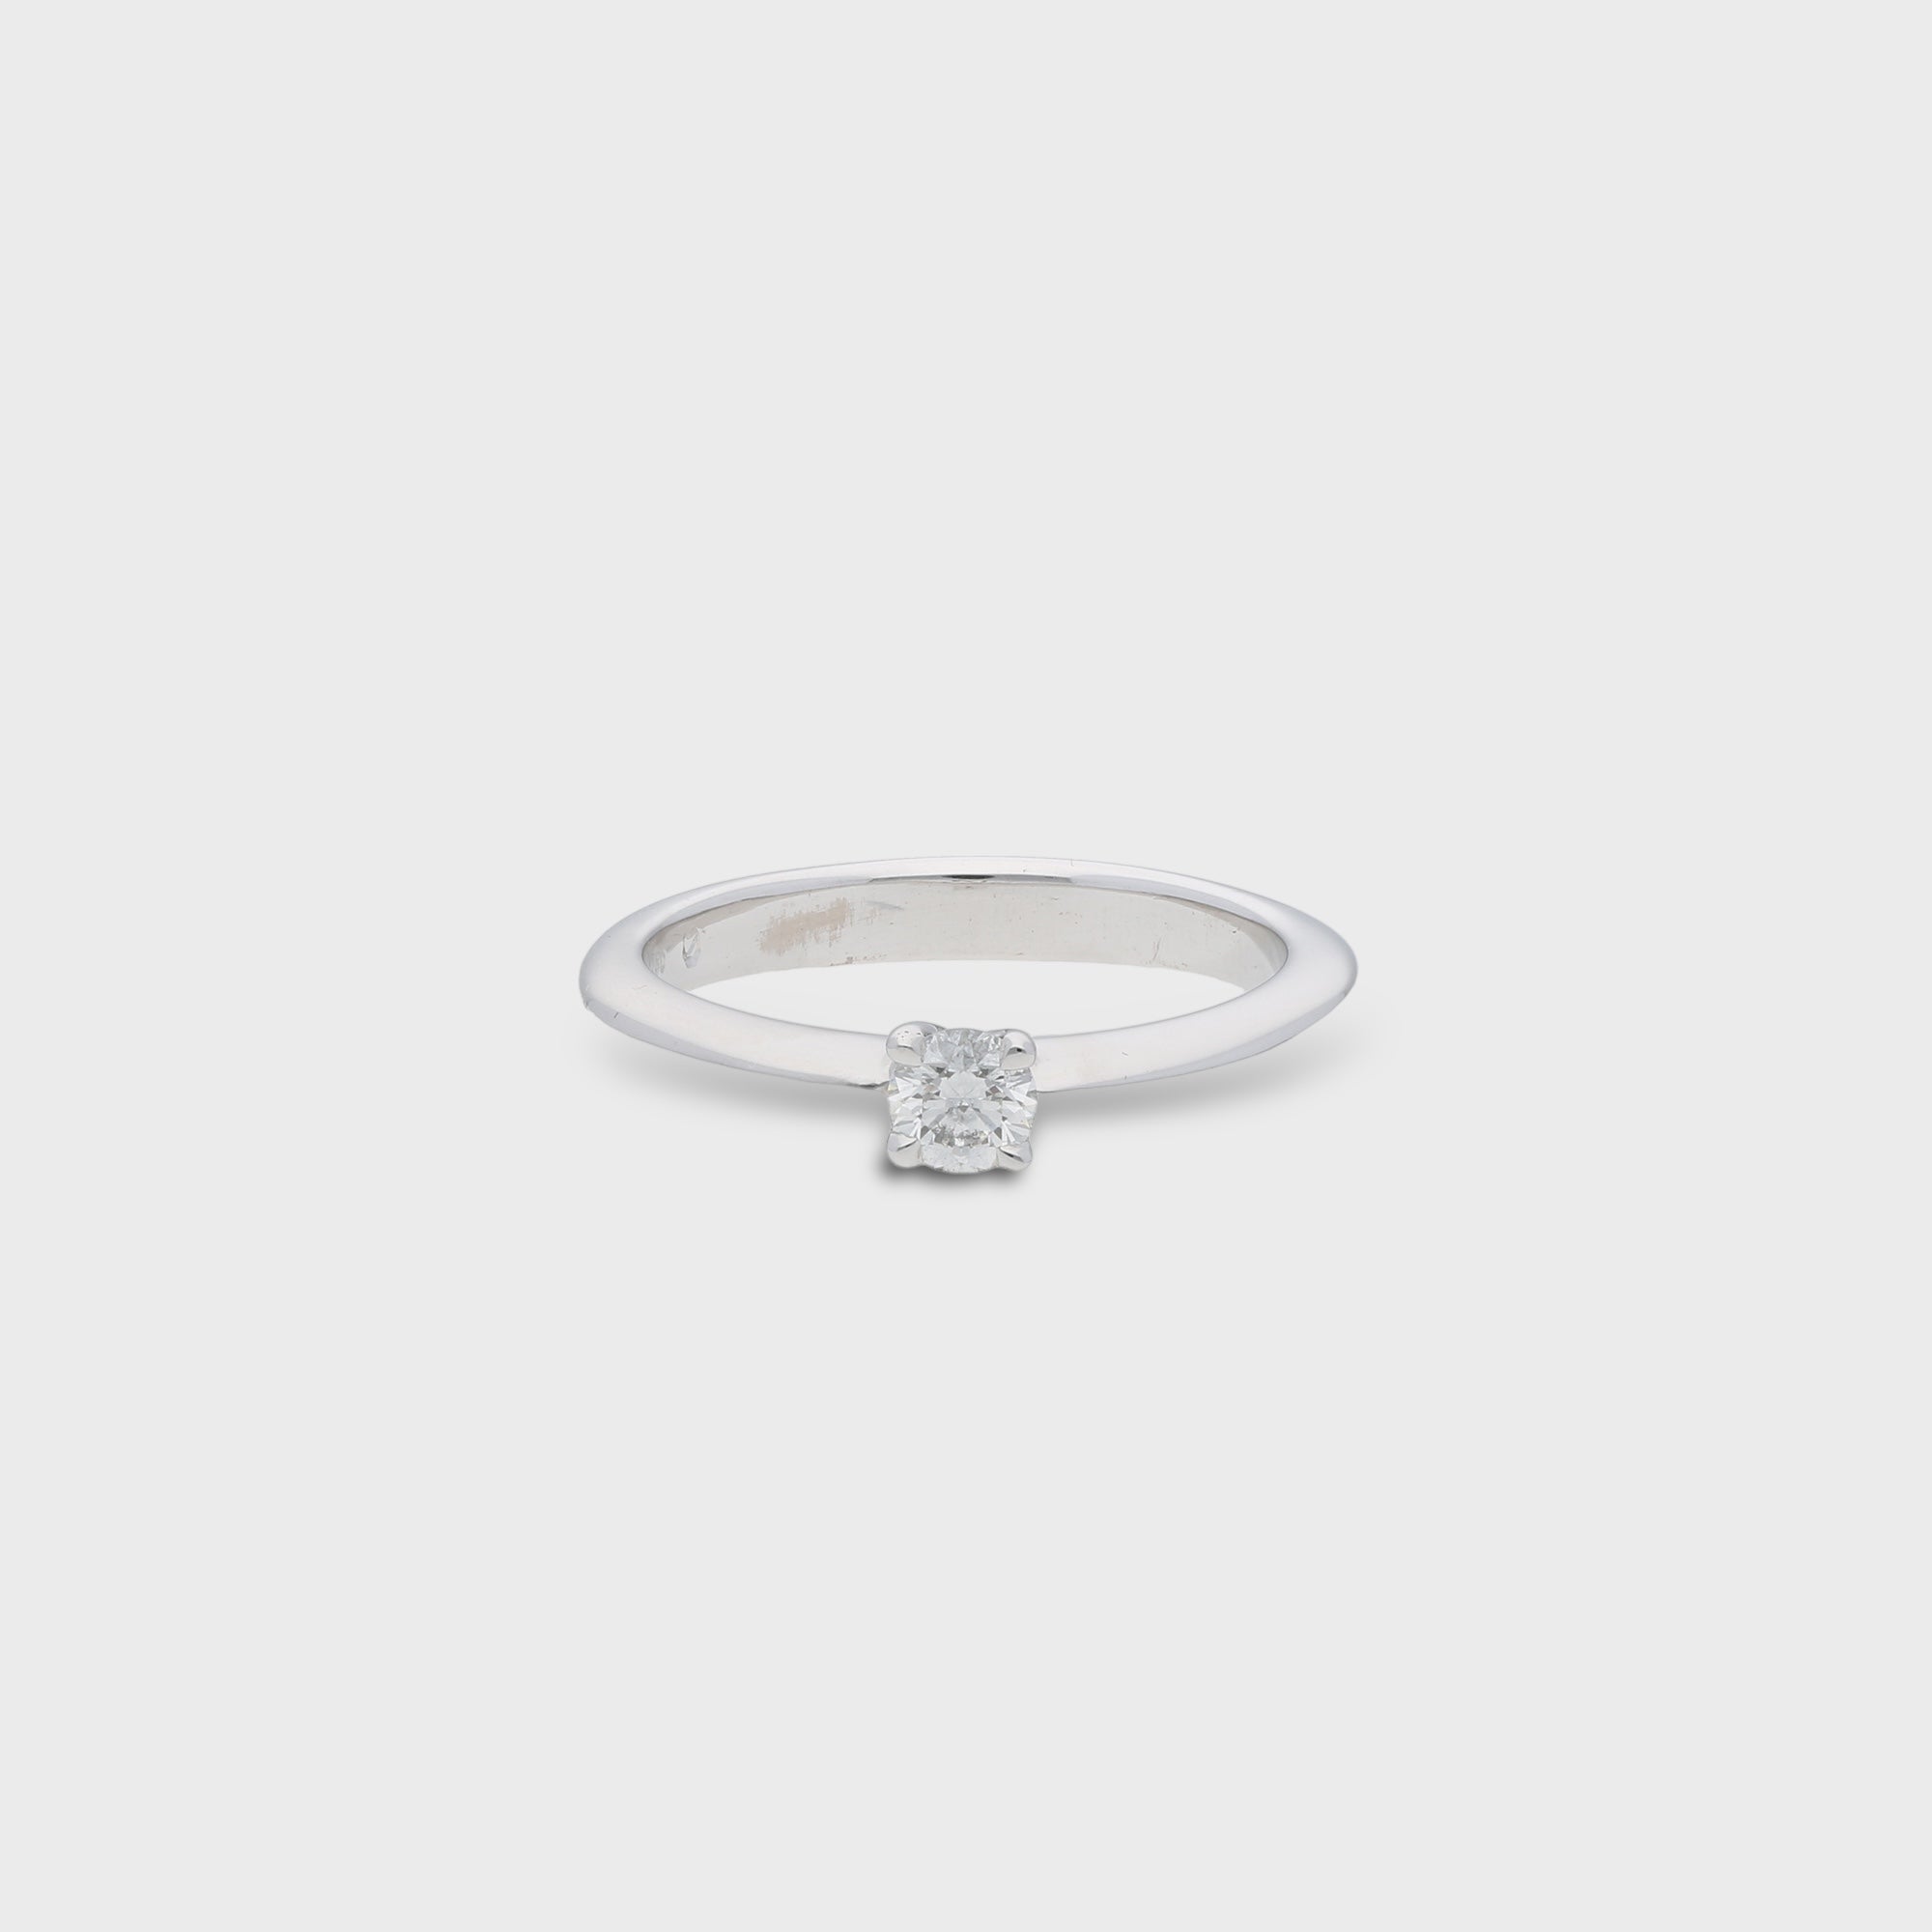 Second Hand Diamantschmuck jetzt online kaufen auf kaleaz.